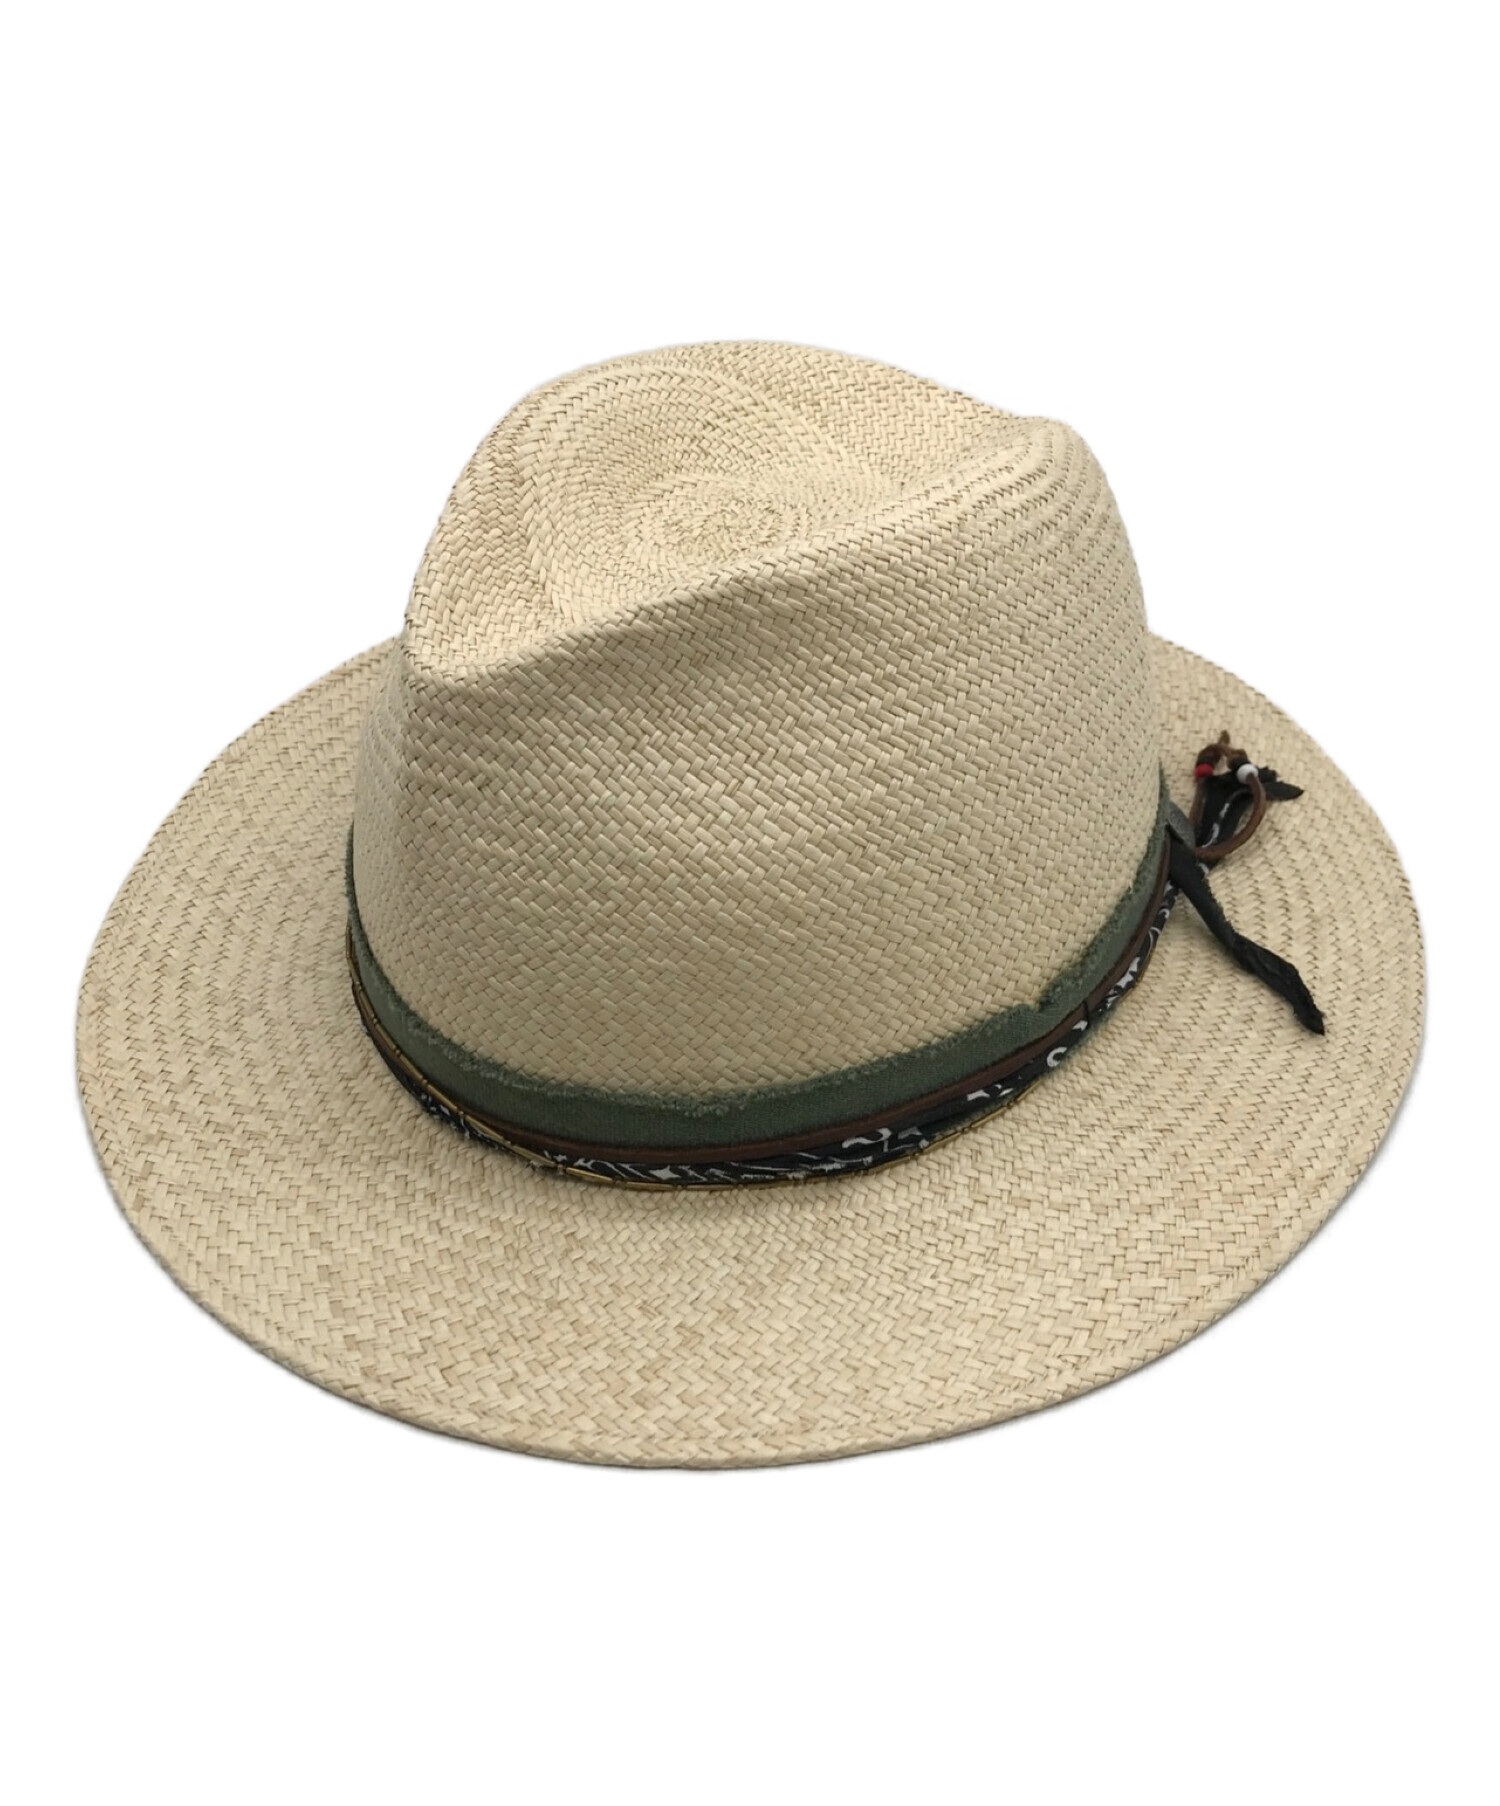 中古・古着通販】PABLO VINCI (パブロビンチ) Panama hat/パナマハット 